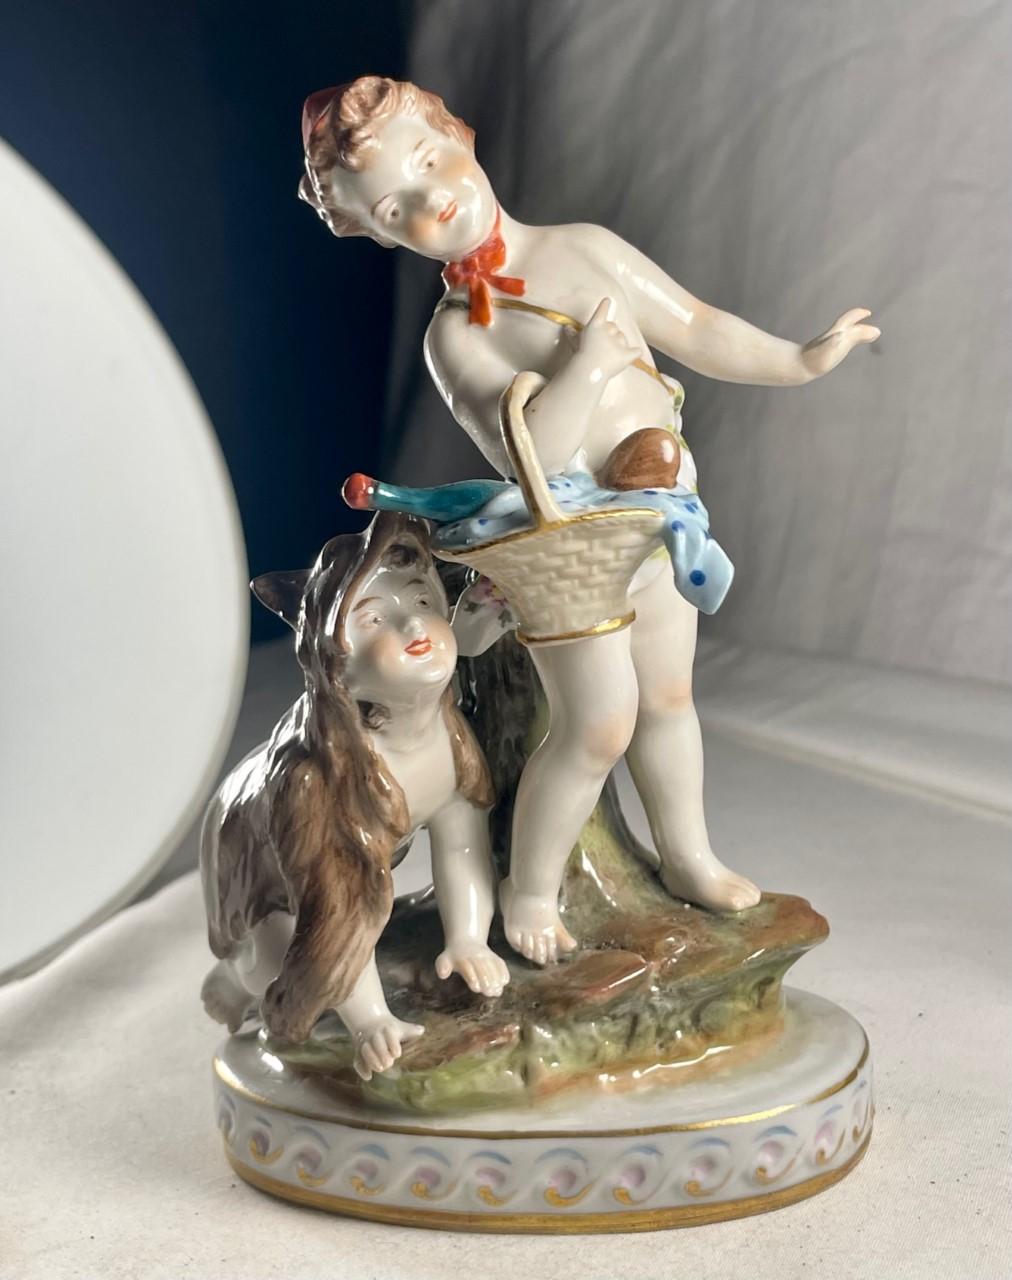 Italienisches Neapel des frühen 20. Jahrhunderts Polychromes Porzellan Skulpturengruppe.

Charmante antike italienische Neapel polychrome Hand gemalt fröhlich spielende Kinder in Porzellan. Die Miniaturskulptur ist wunderschön modelliert und